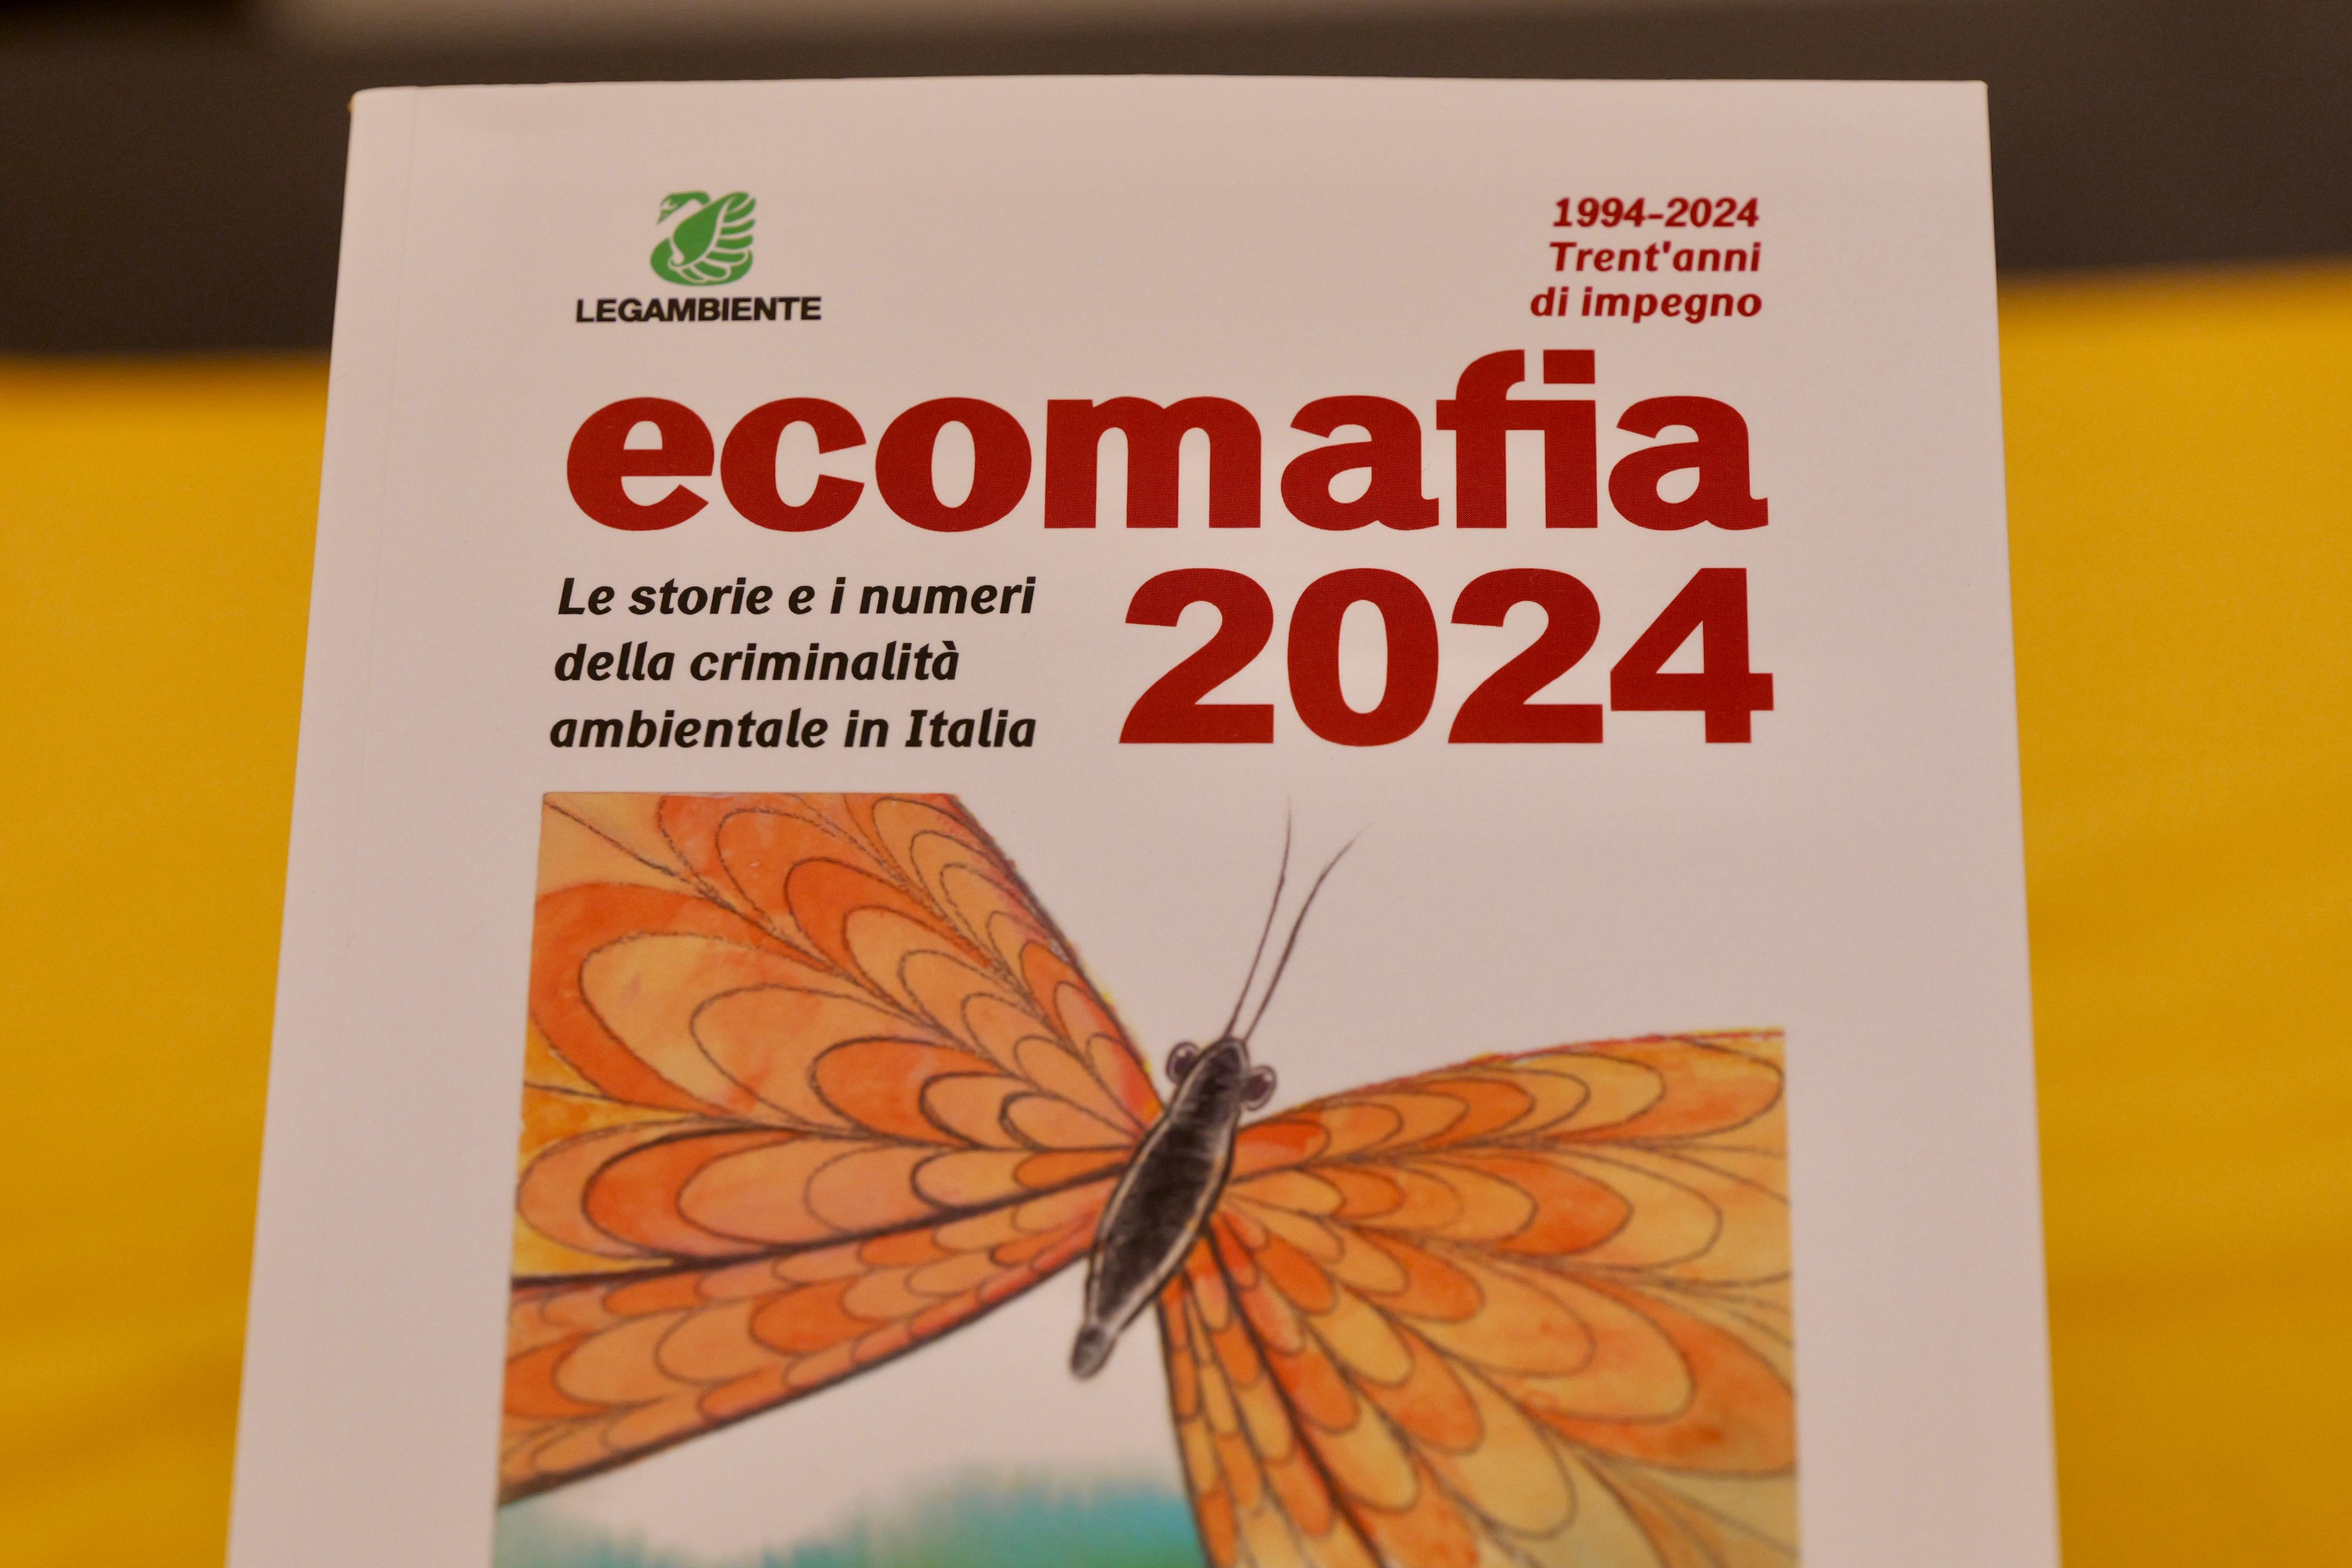 Galleria Presentazione rapporto ECOMAFIA 2024 di Legambiente, Triggiani: “Dati confermano azione virtuosa di controllo e repressione sul territorio”  - Diapositiva 6 di 7